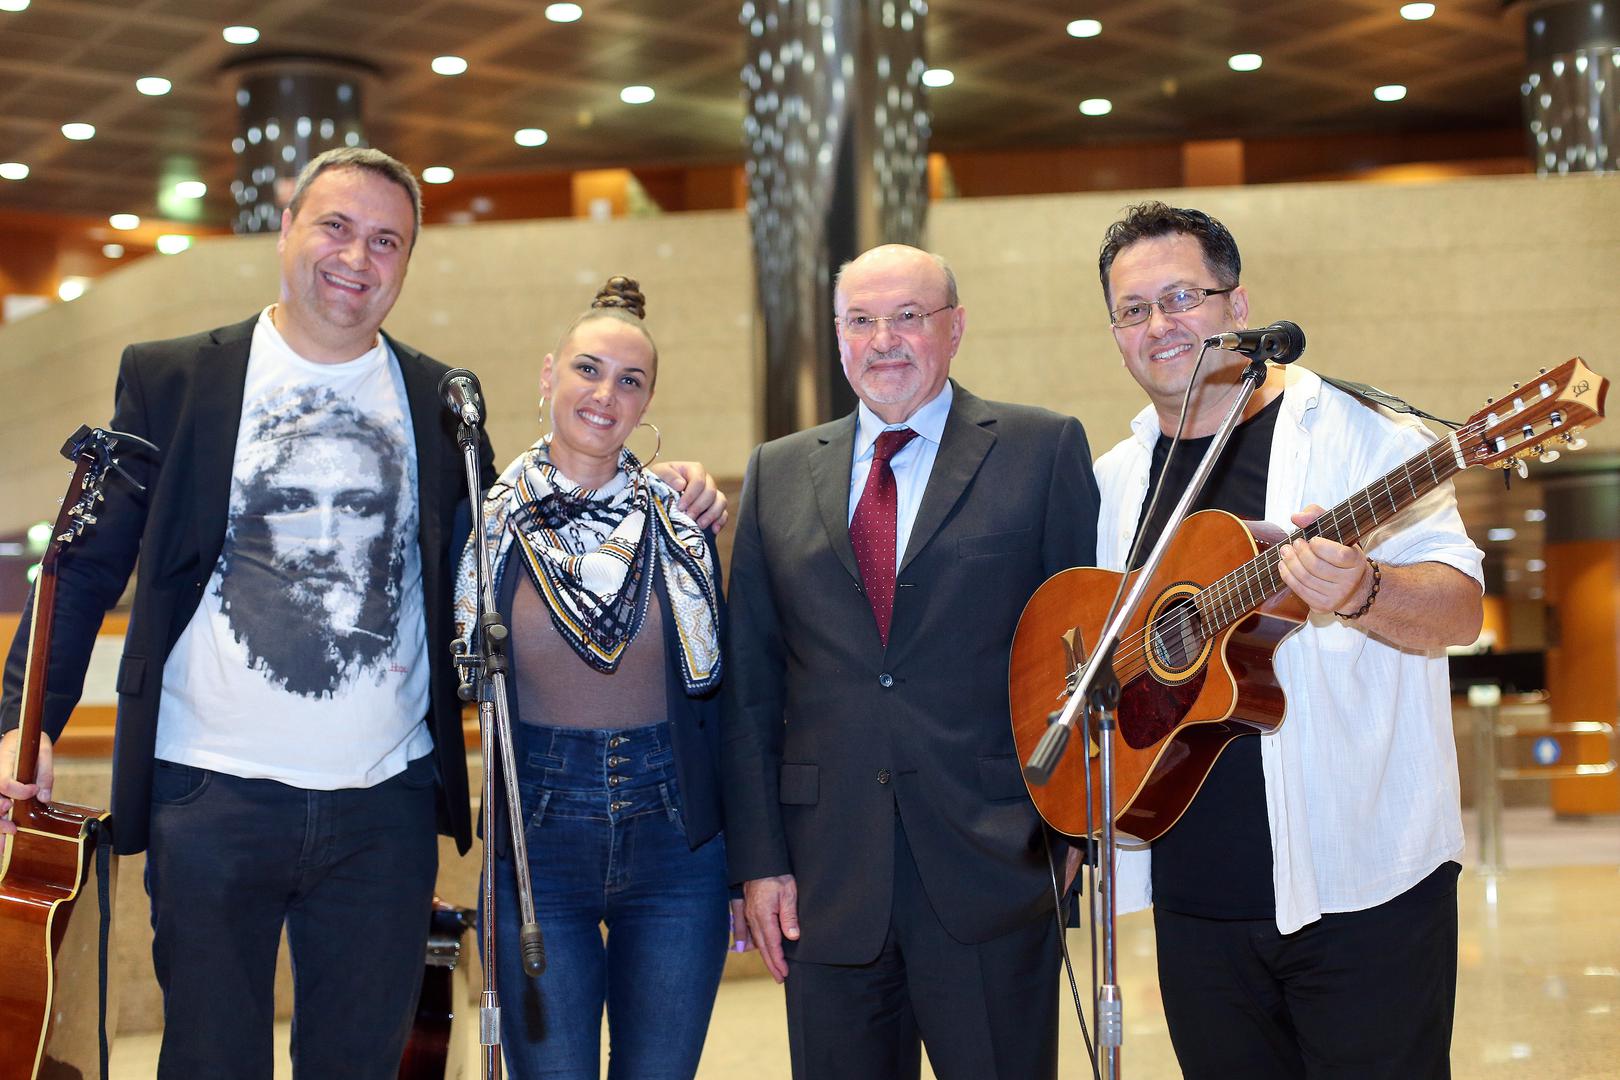 Glazbeni program osigurao je sastav Zvonka Palića, Anite Gojanović i Josipa Ćulumovića